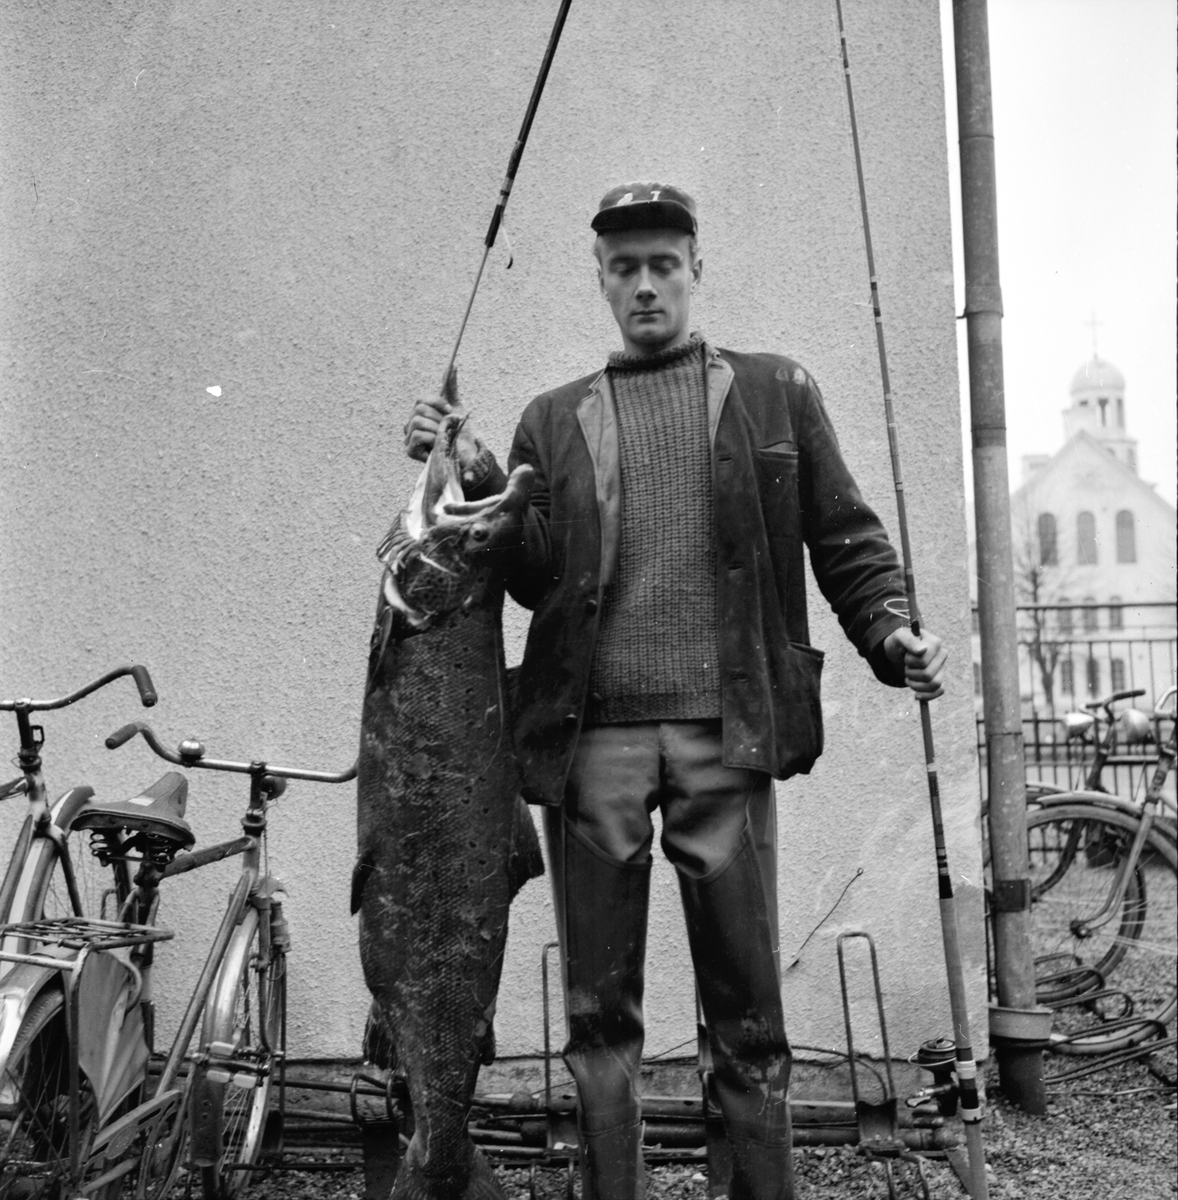 Nilsson Stig,
Laxfiskare,
okt 1964